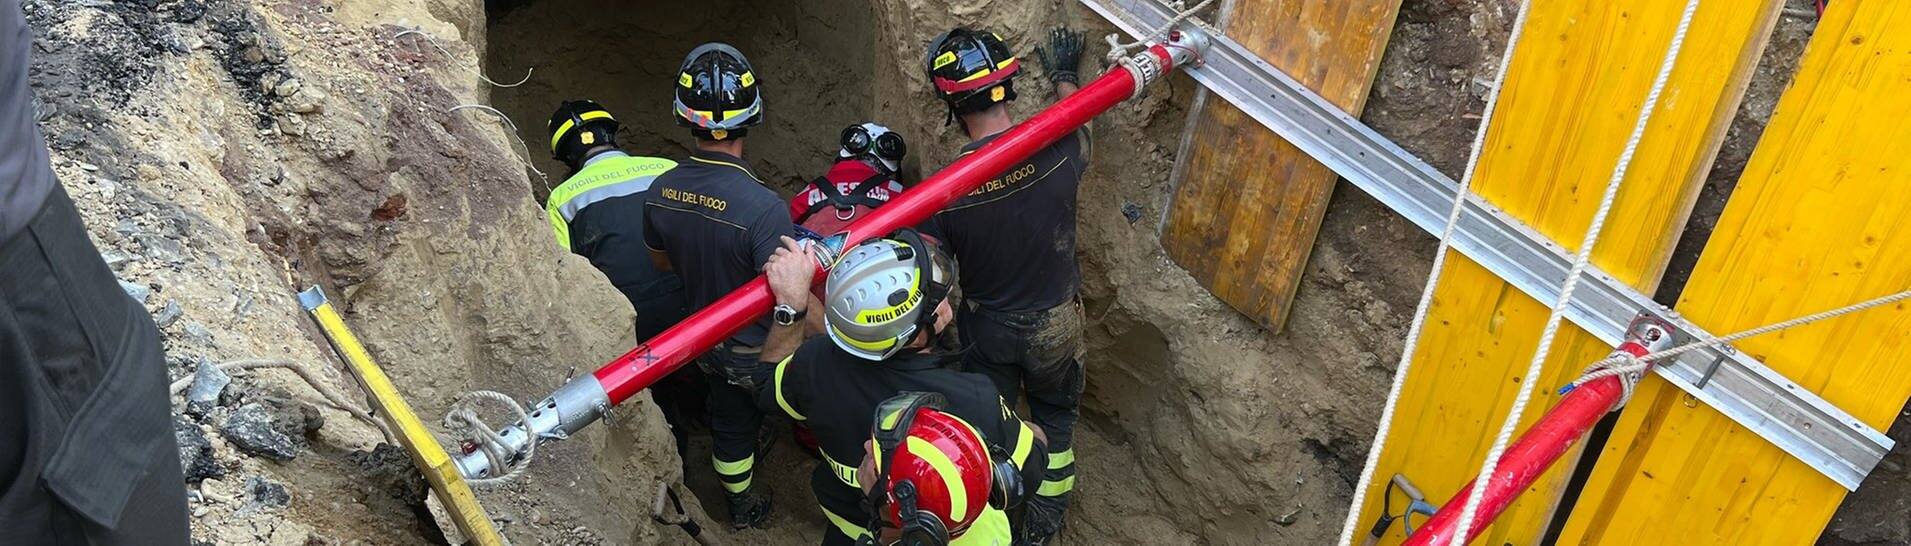 Die Feuerwehr rettet den verschütteten Bankräuber. (Foto: Twitteraccount der italinischen Feuerwehr @vigilidelfuoco)